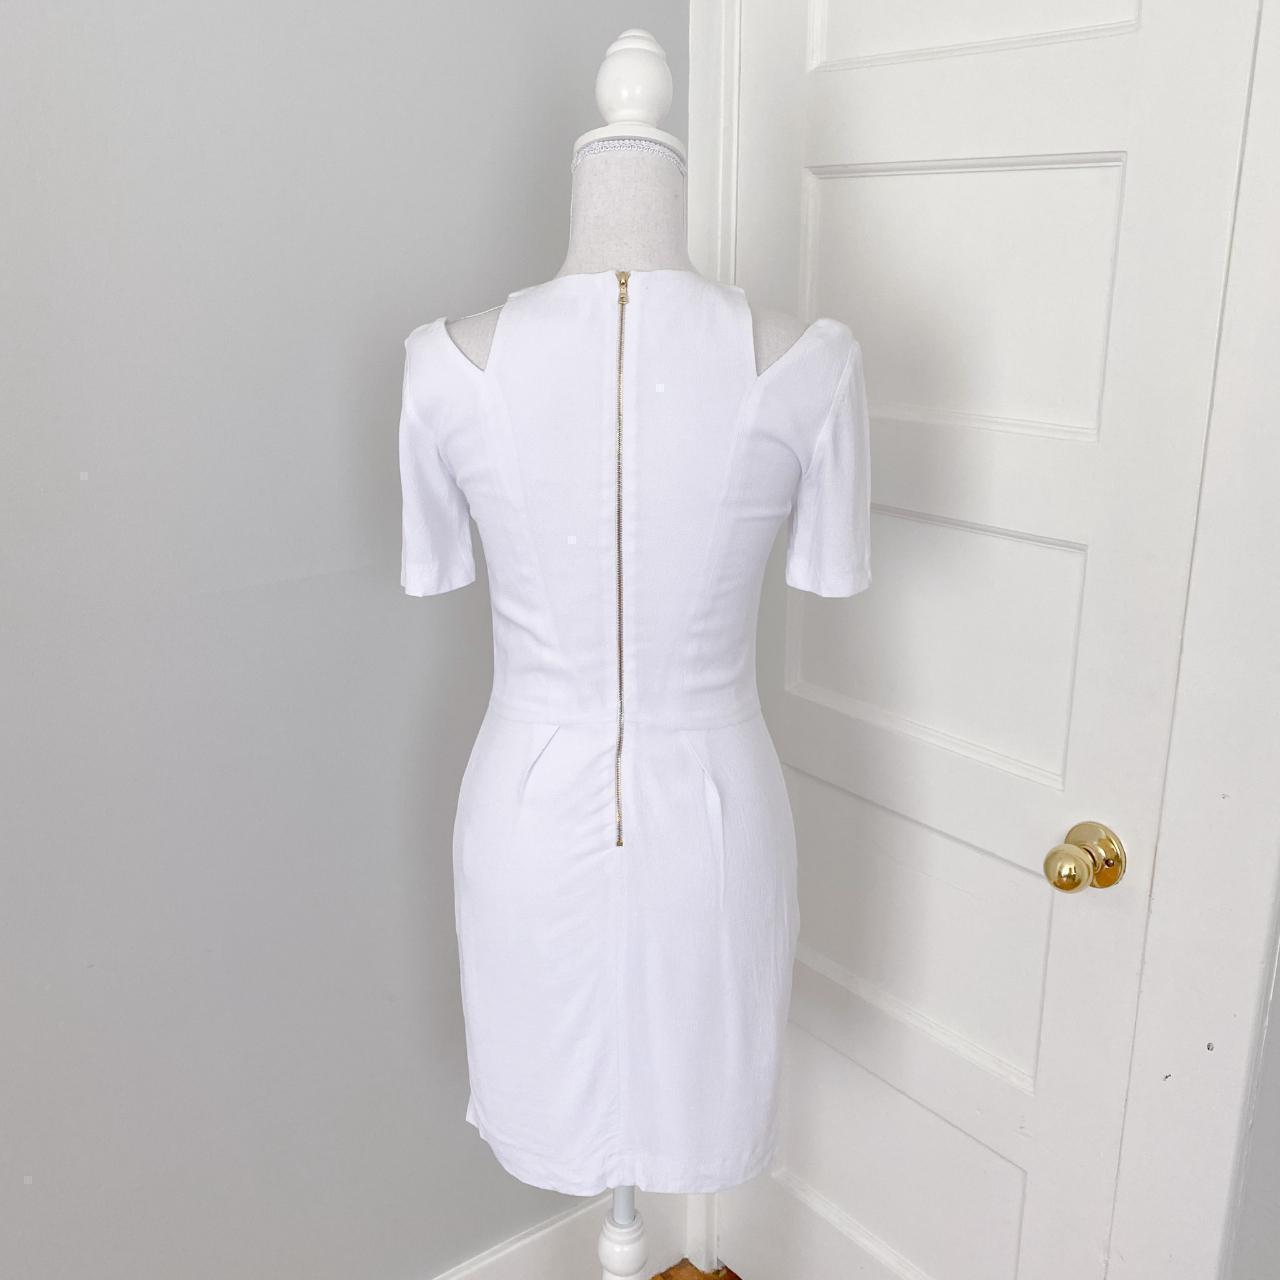 Product Image 2 - Sandro sheath dress
Size 1 (Equivalent